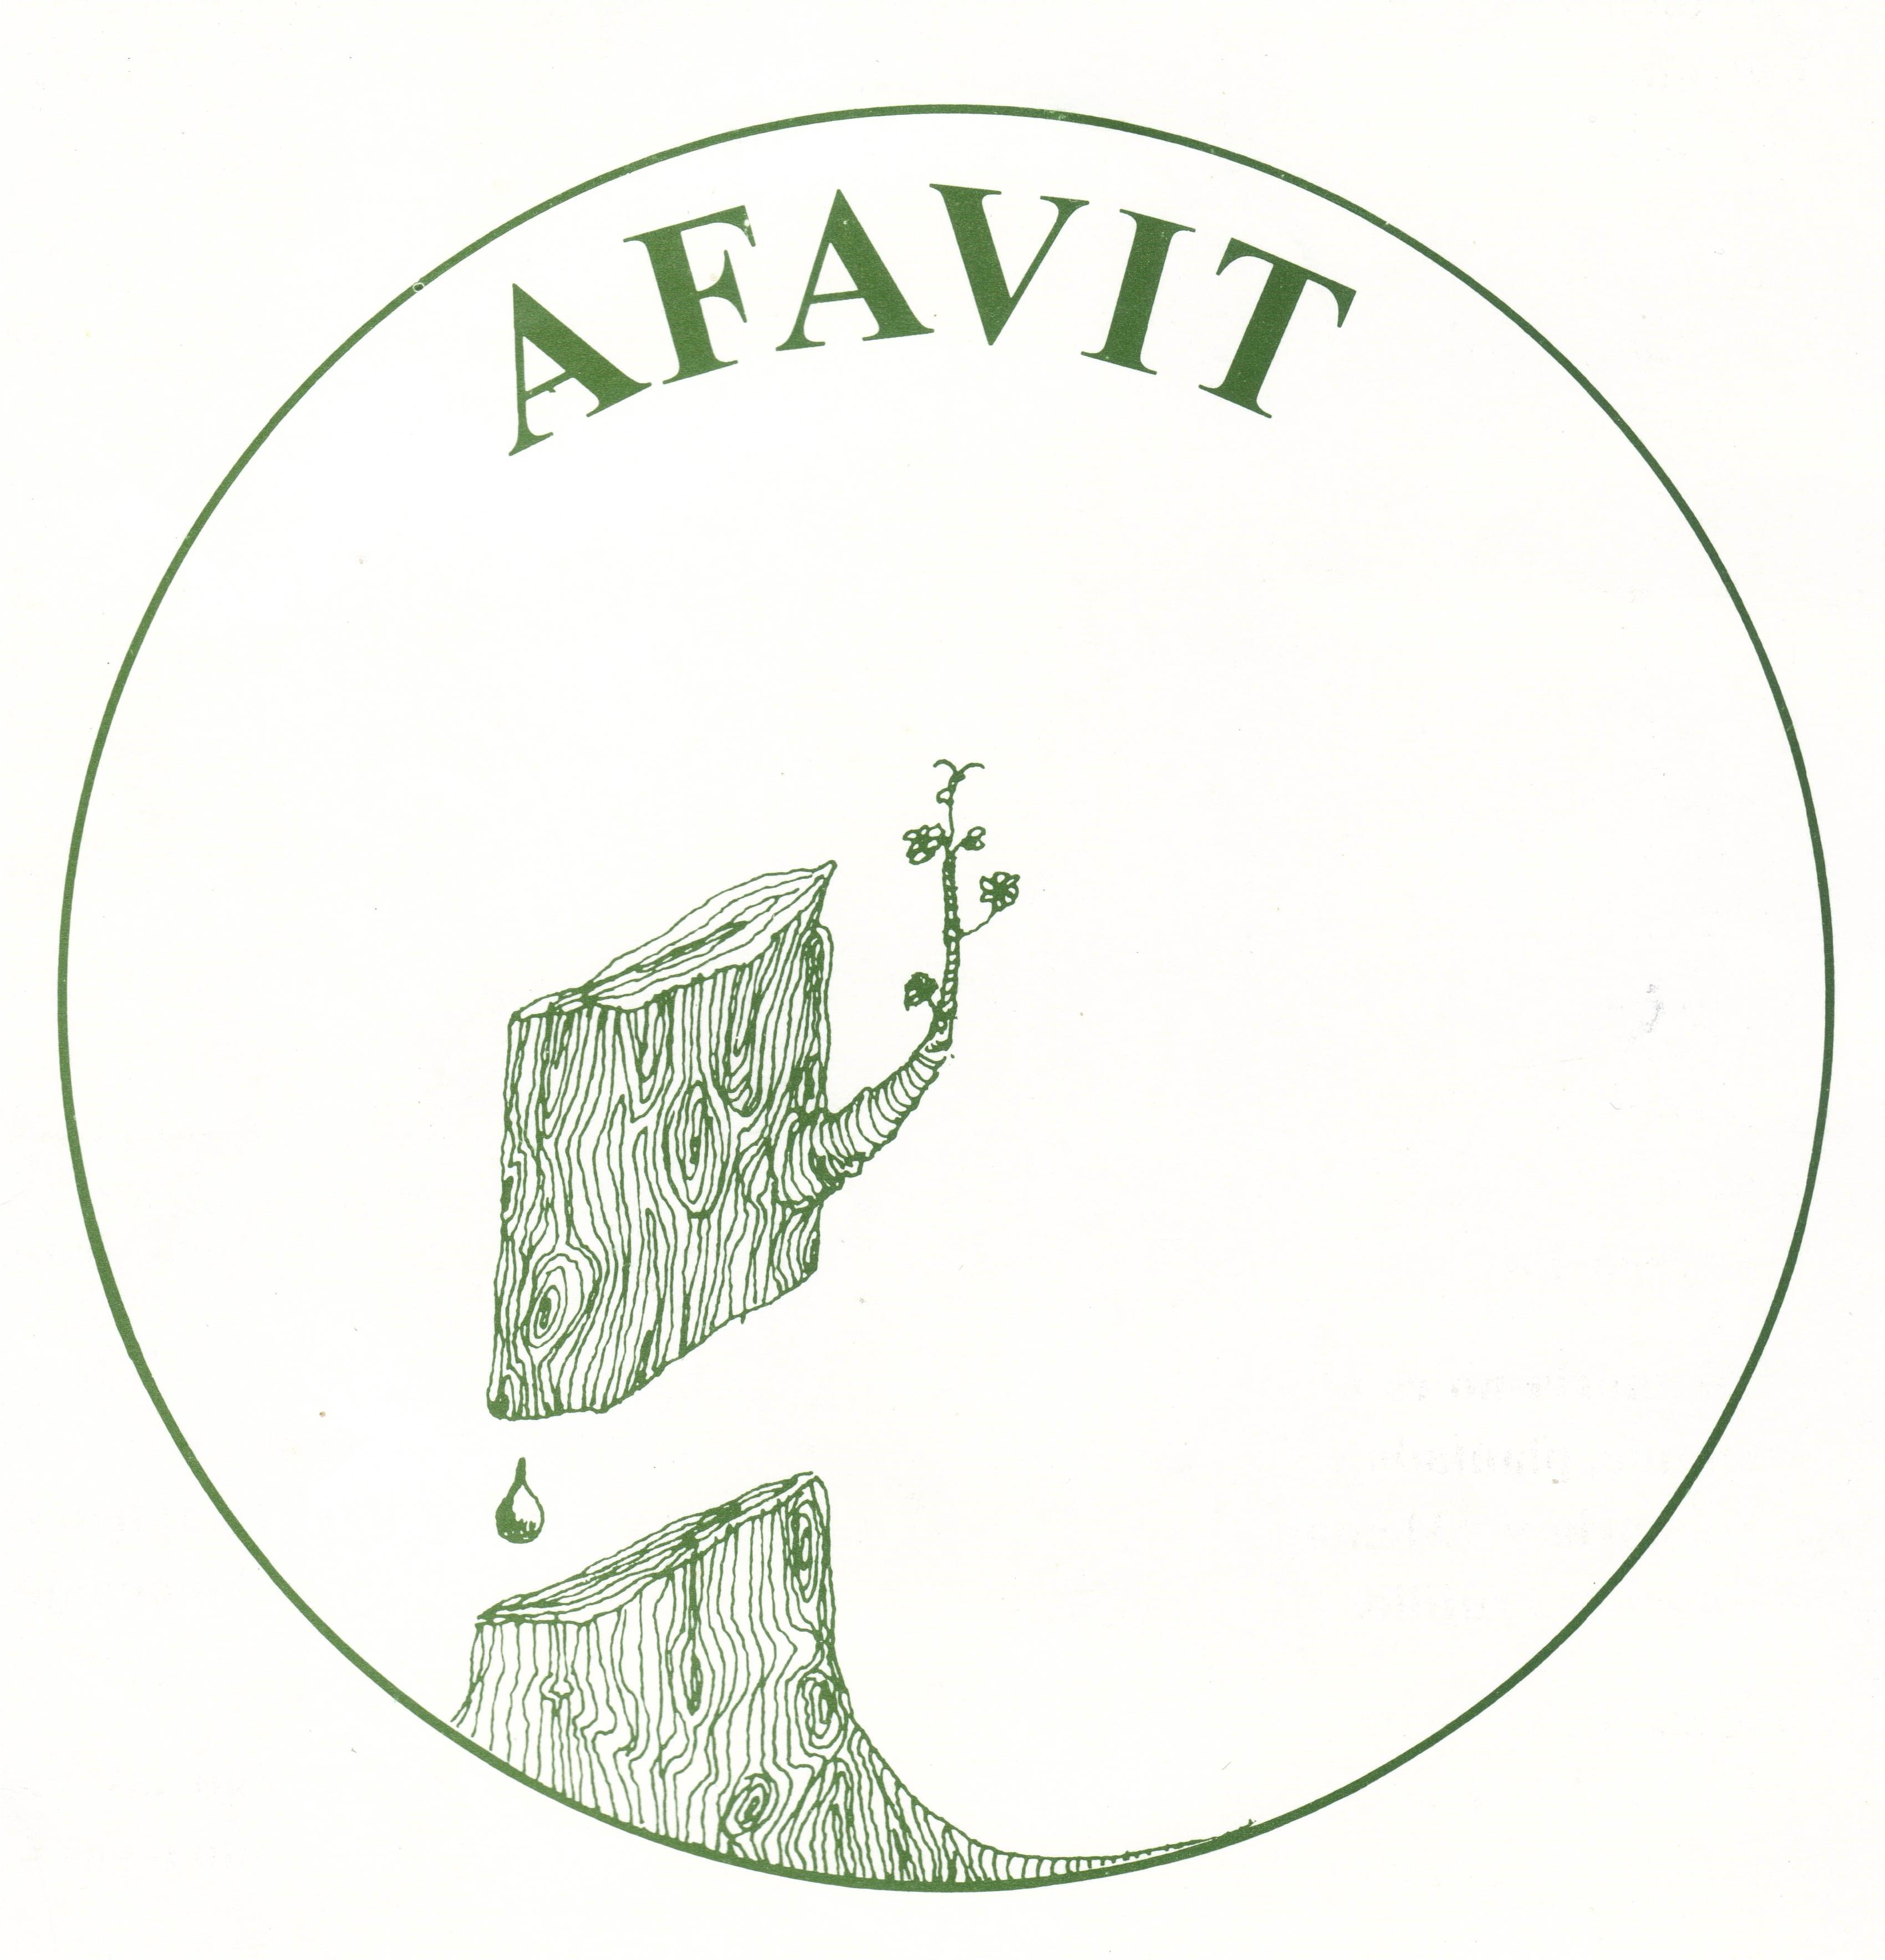 Afavit, una familia unida y con muchas ganas de luchar por la justicia, la paz y el honor de nuestros seres queridos.